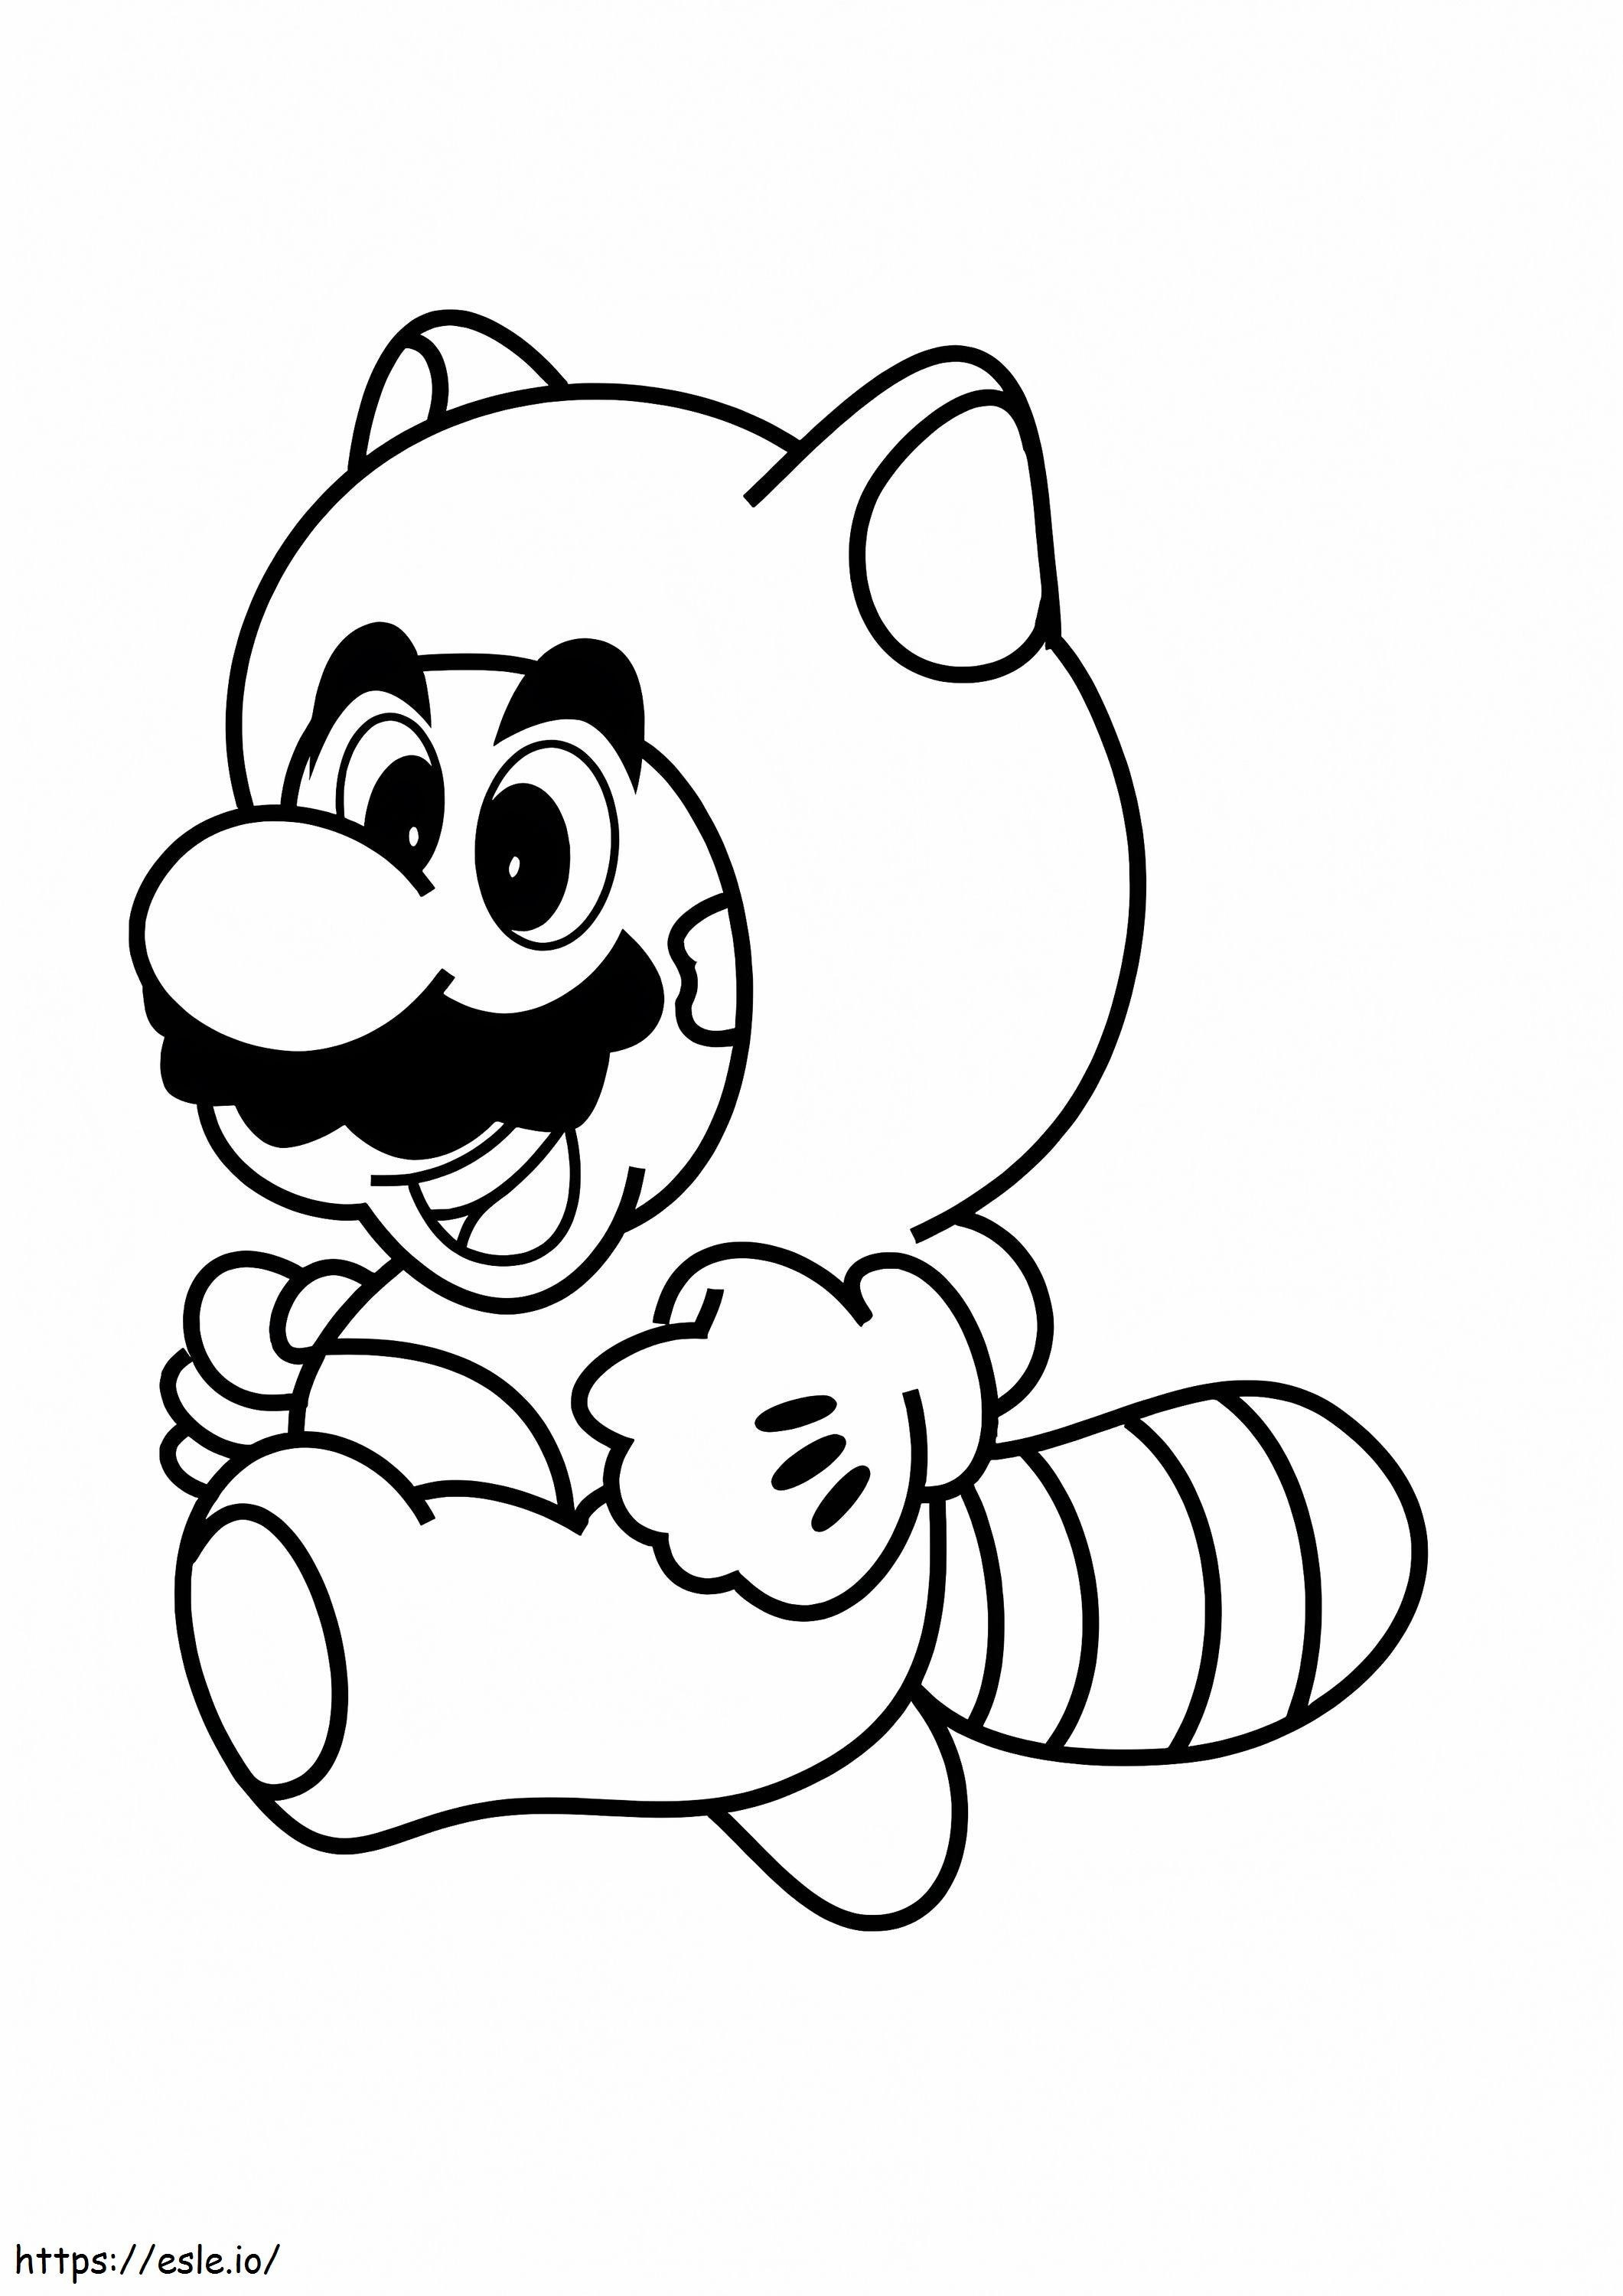 Raccoon Mario coloring page